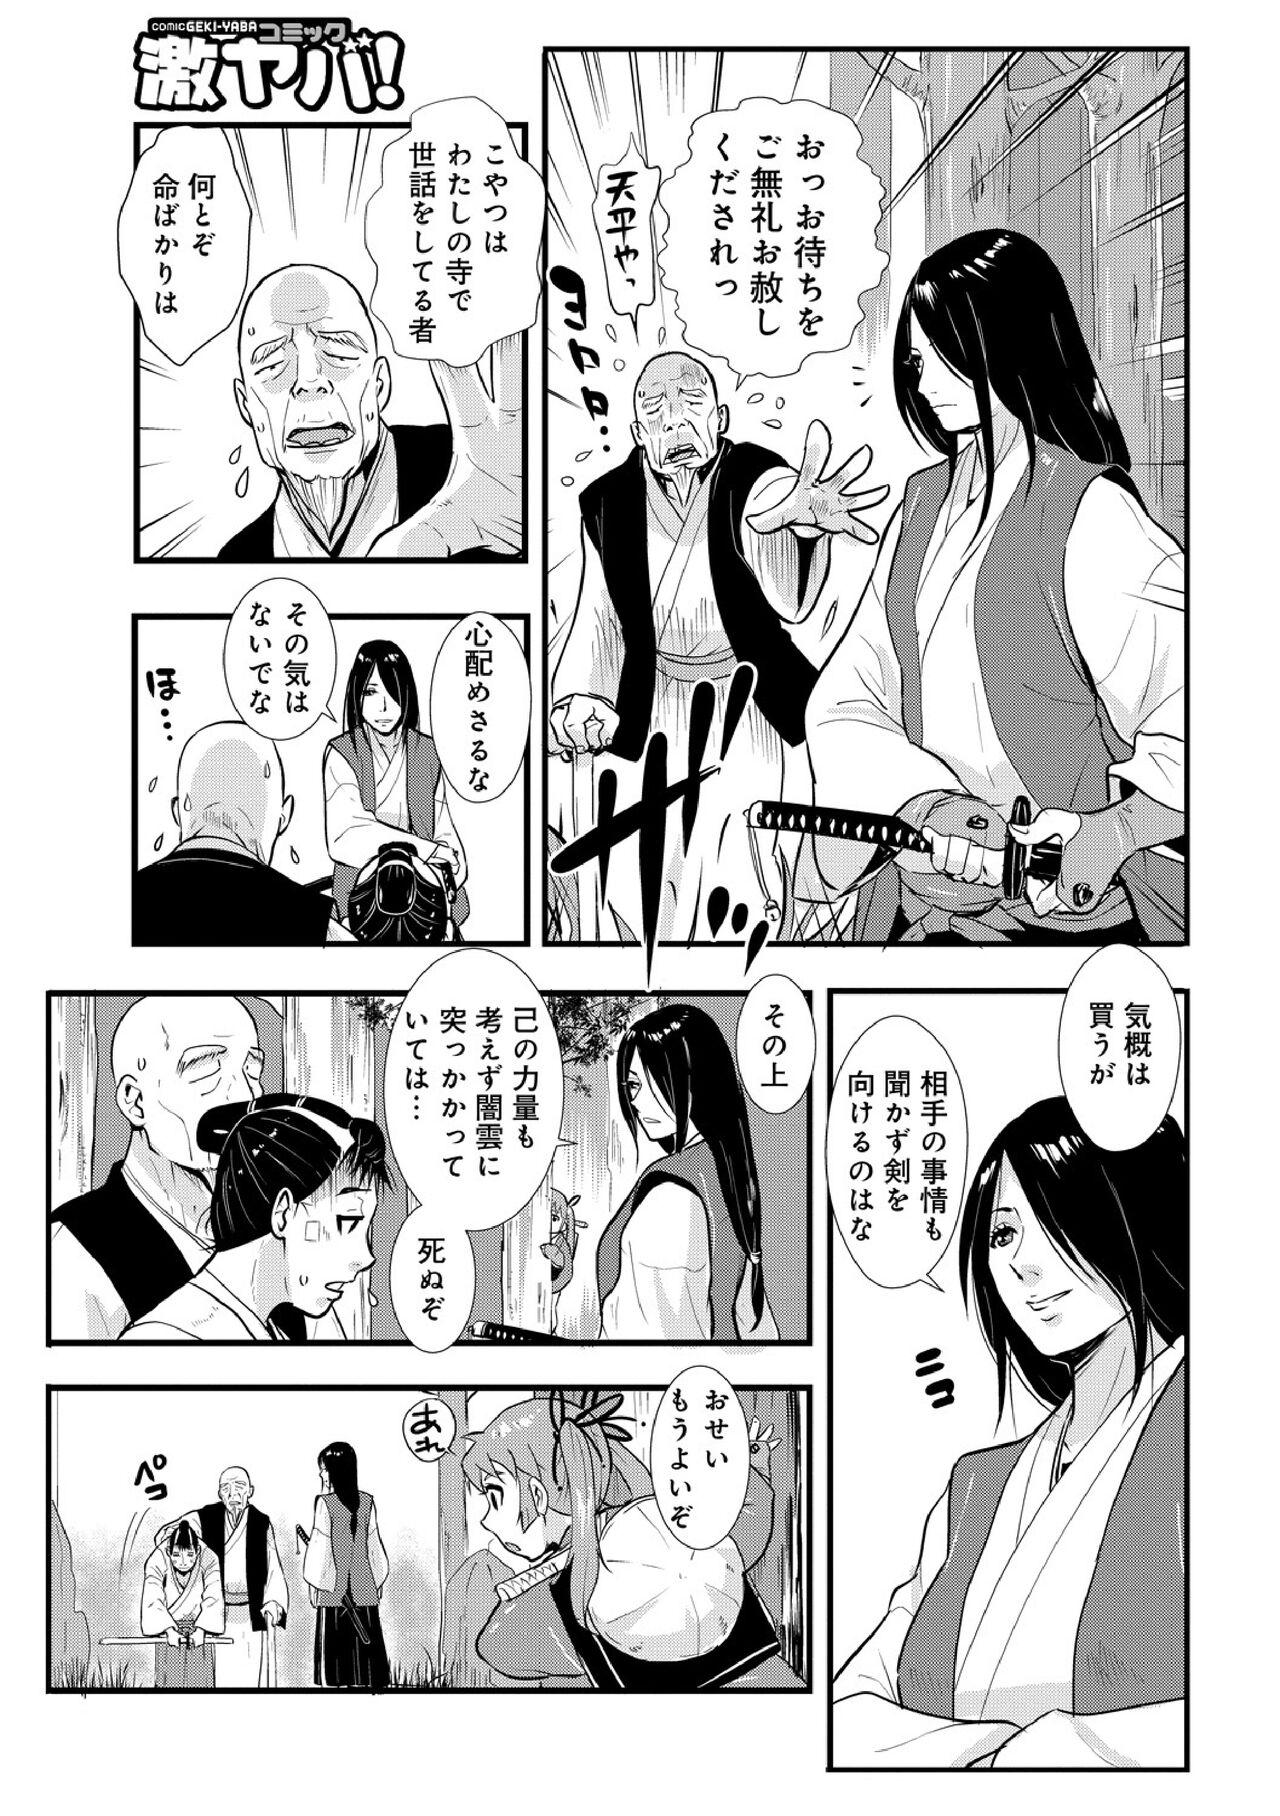 Cornudo Harami samurai 05 Leather - Page 5